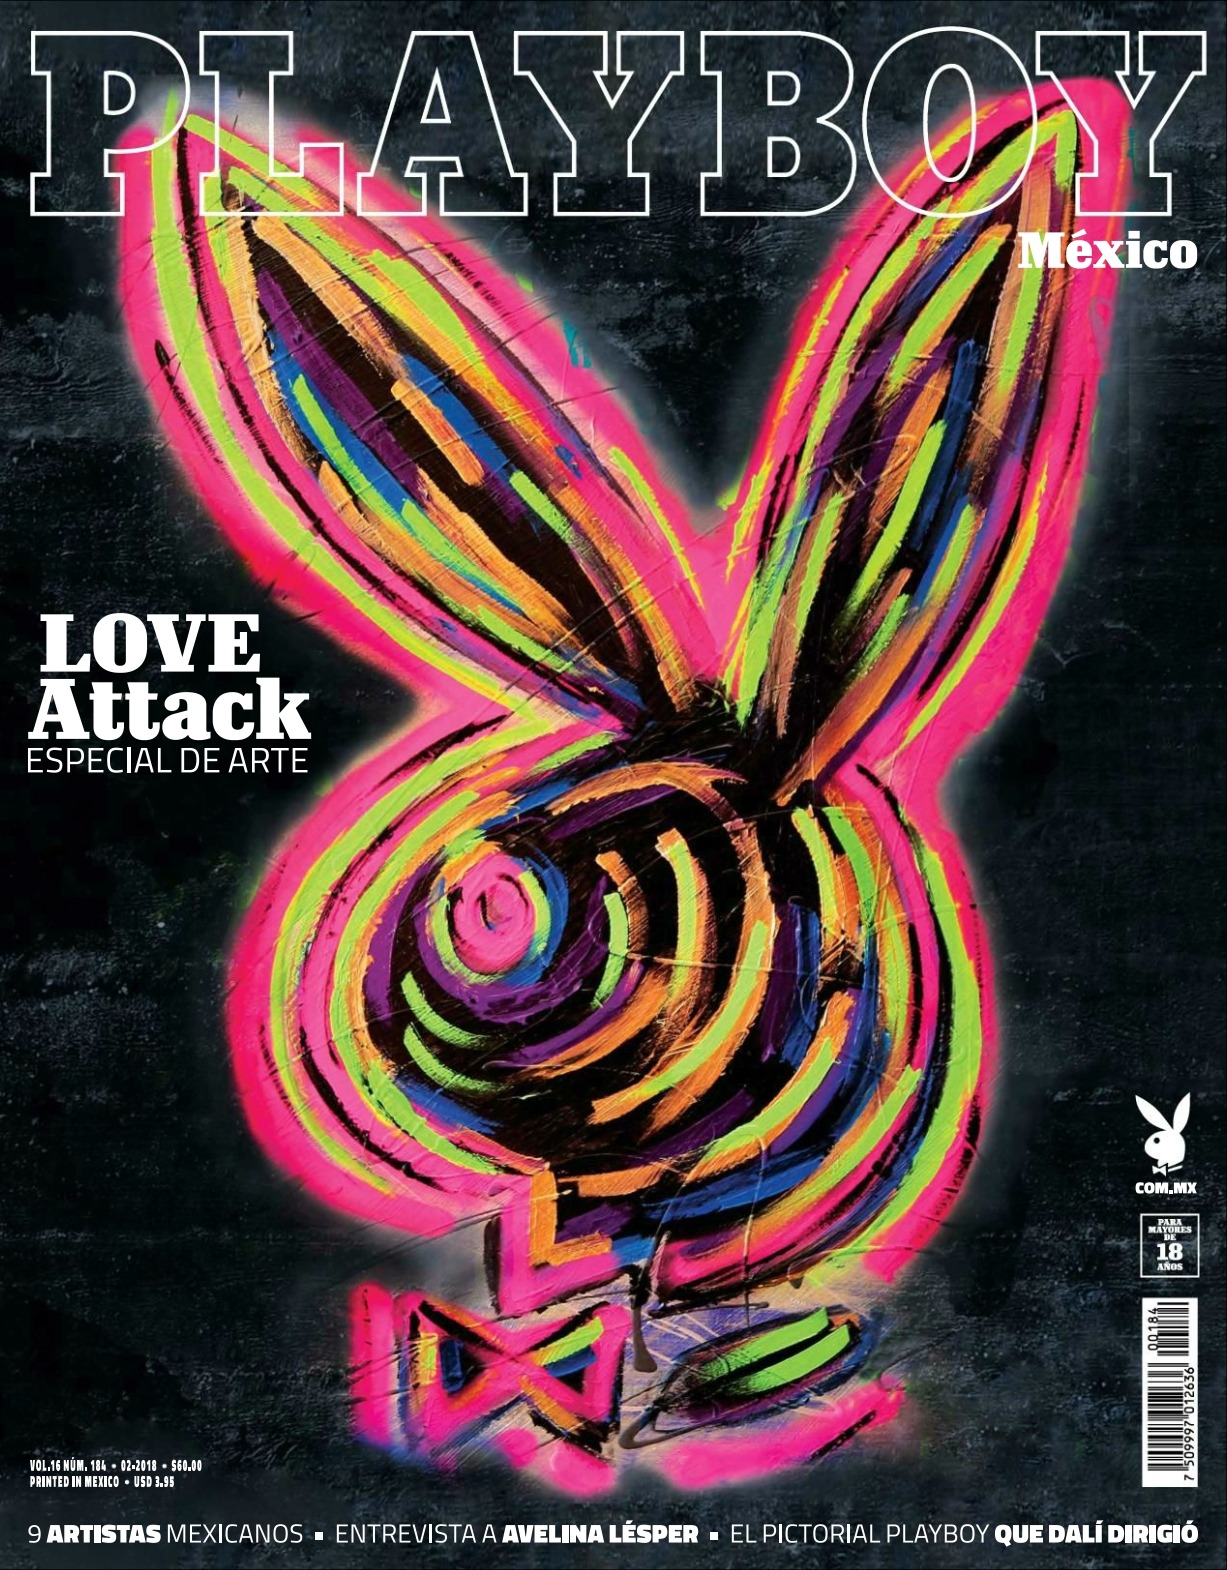 Love Attack - Playboy Mexico 2018 Febrero (65 Fotos HQ)Love Attack en la revista